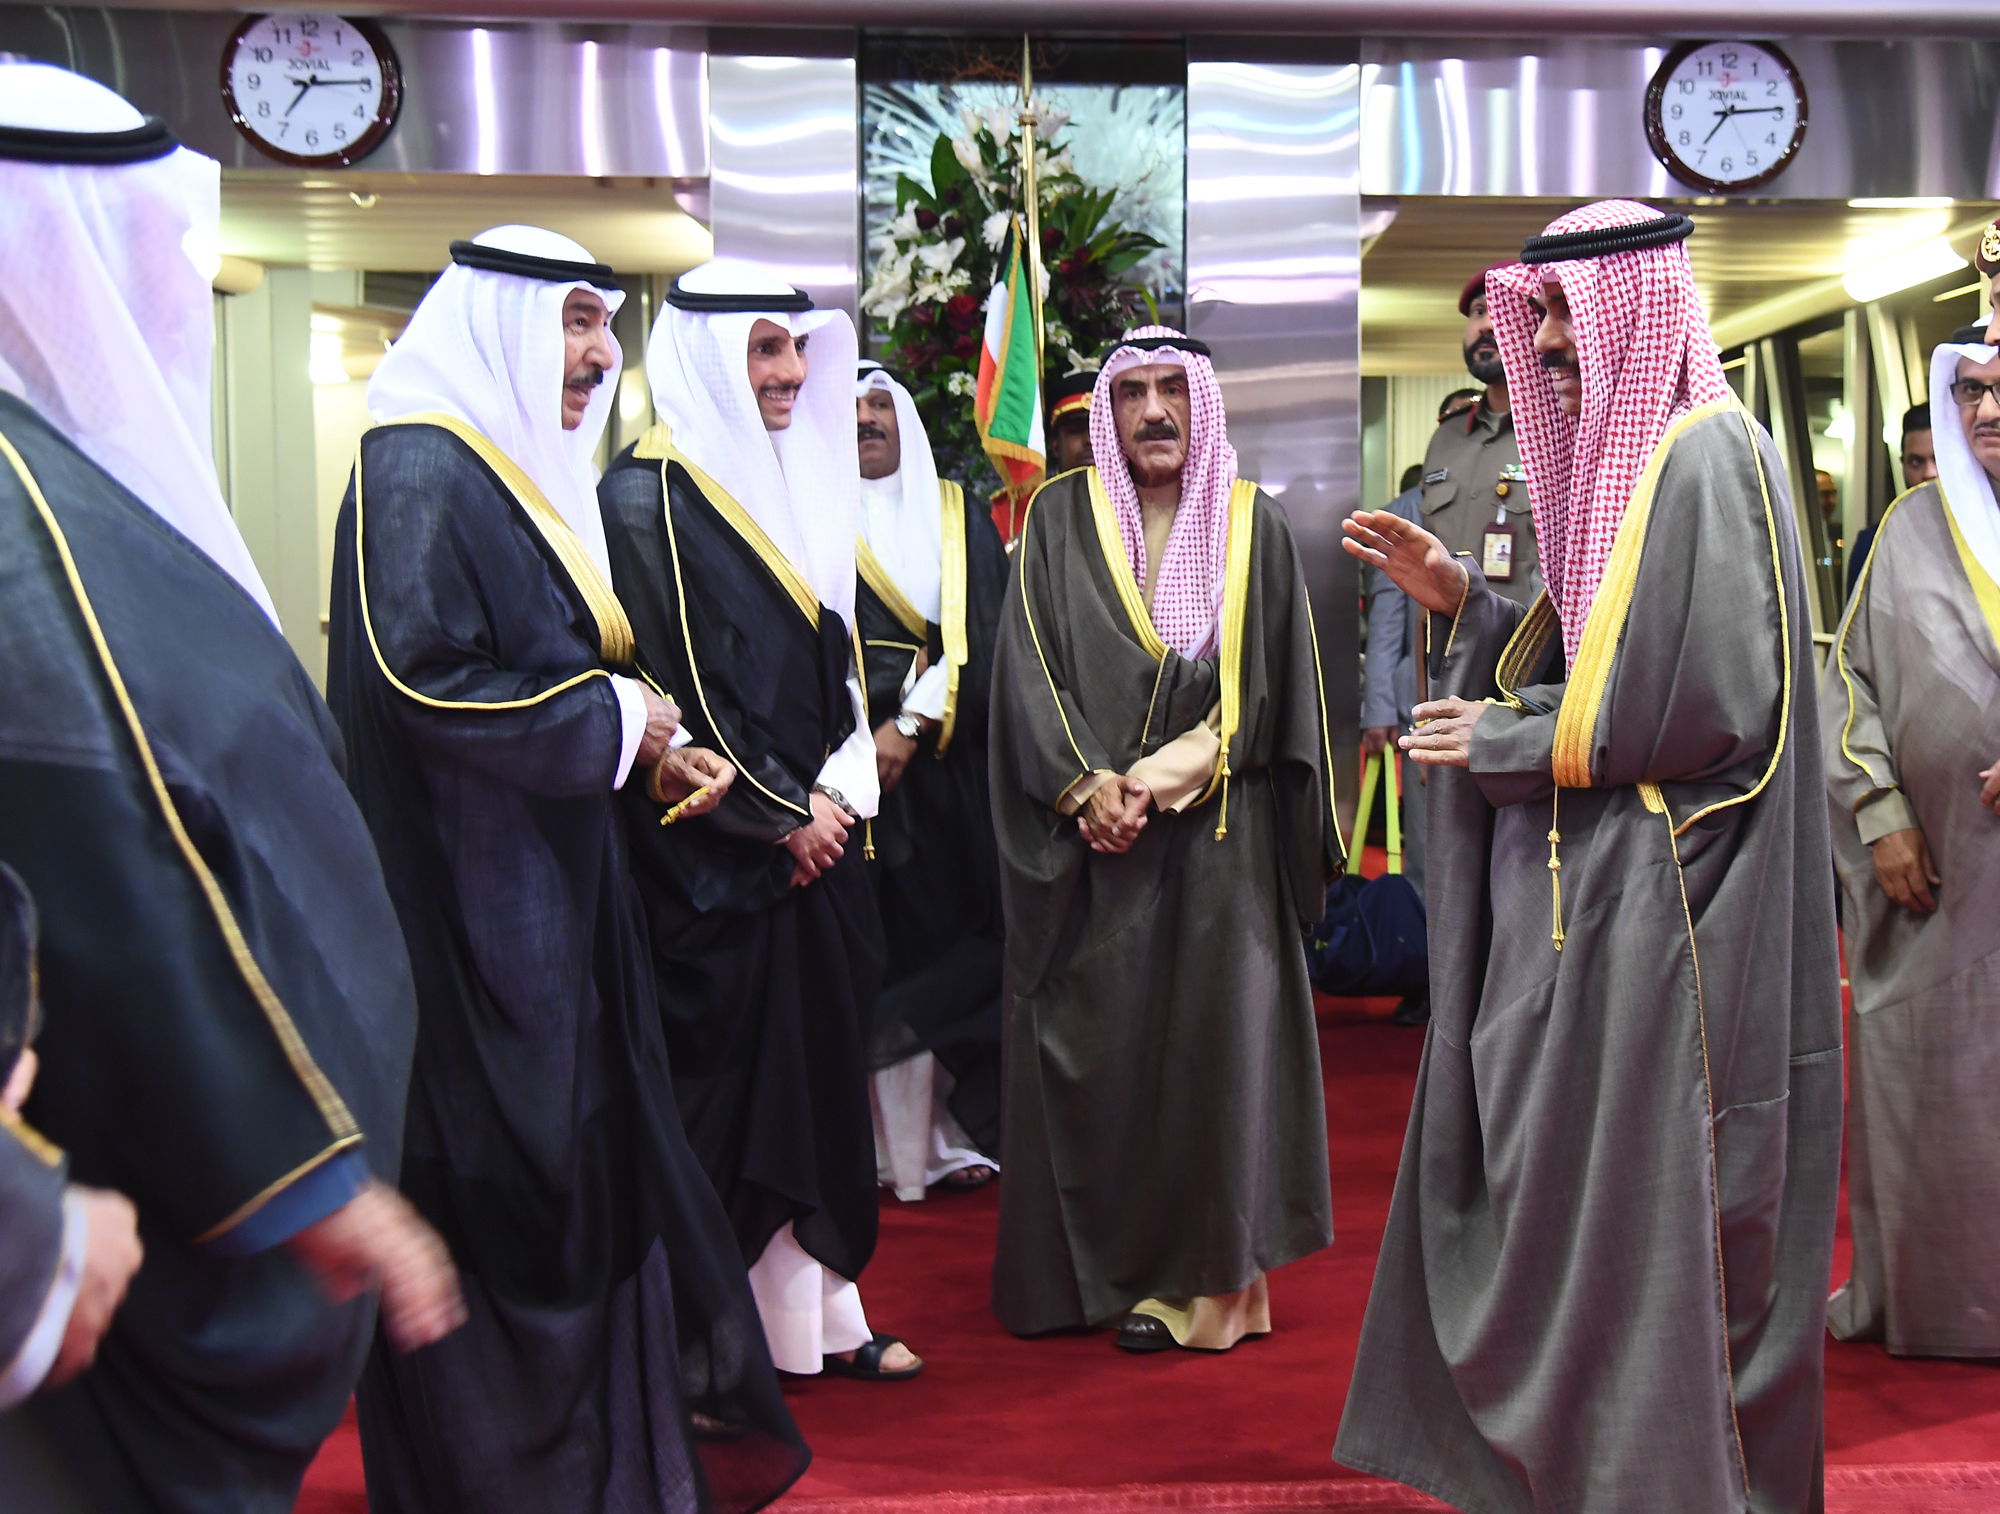 His Highness the Crown Prince Sheikh Nawaf Al-Ahmad Al-Jaber Al-Sabah arrives home